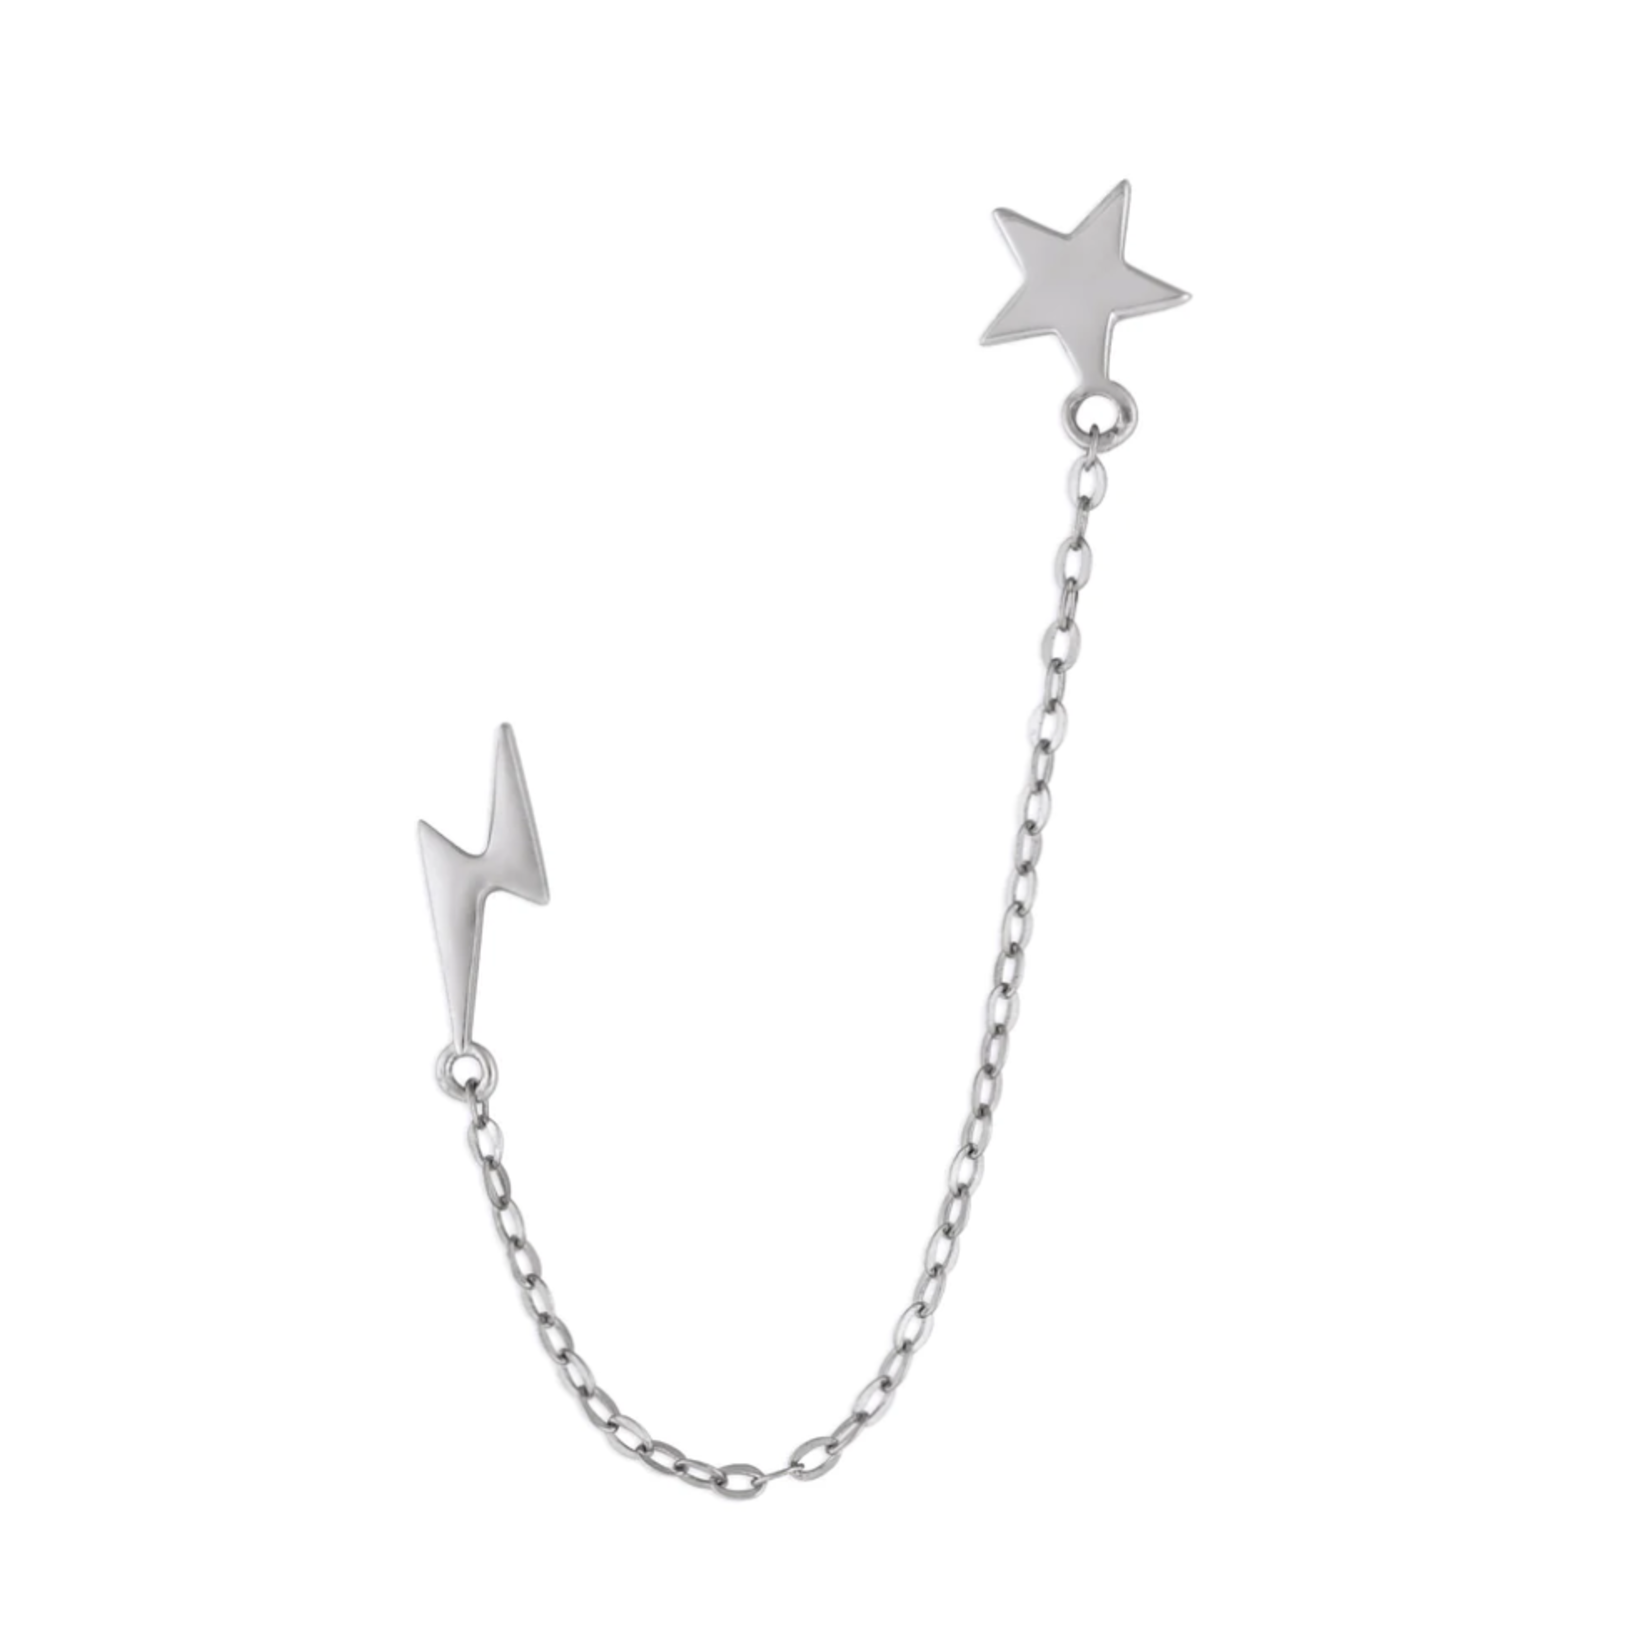 fyb FYB - Earrings Star & Lightning Chain Studs Silver